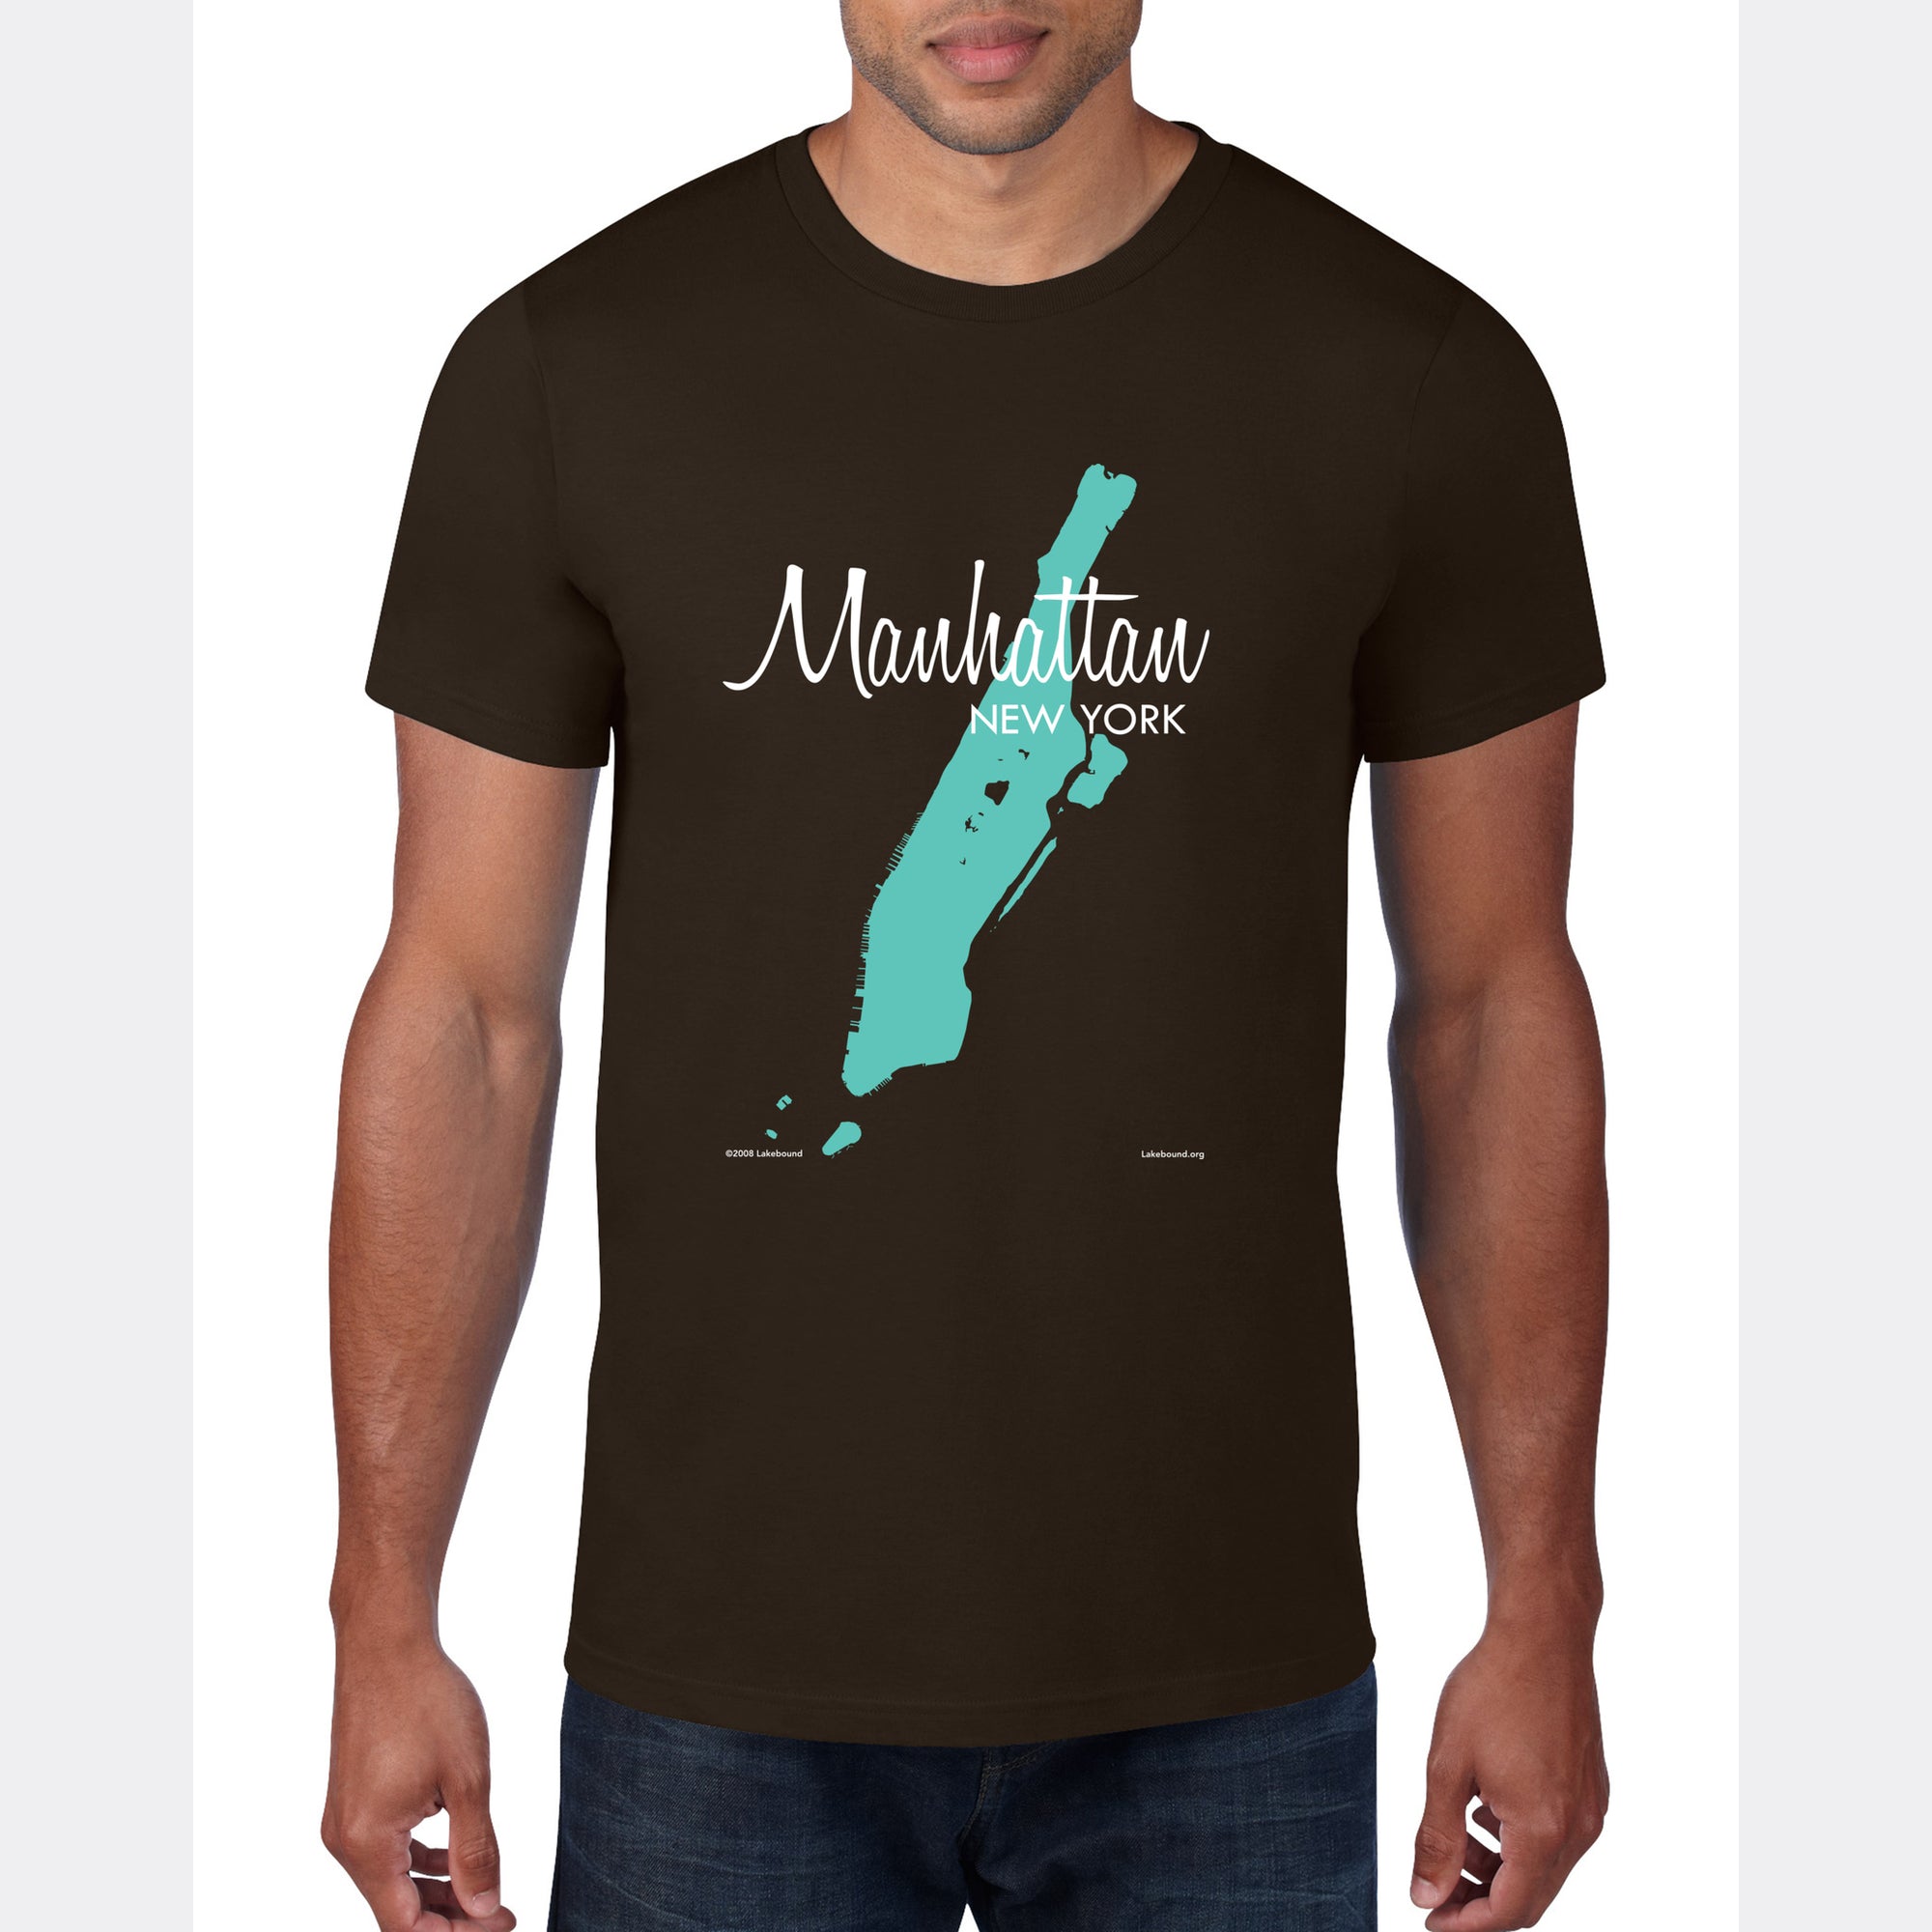 Manhattan New York, T-Shirt